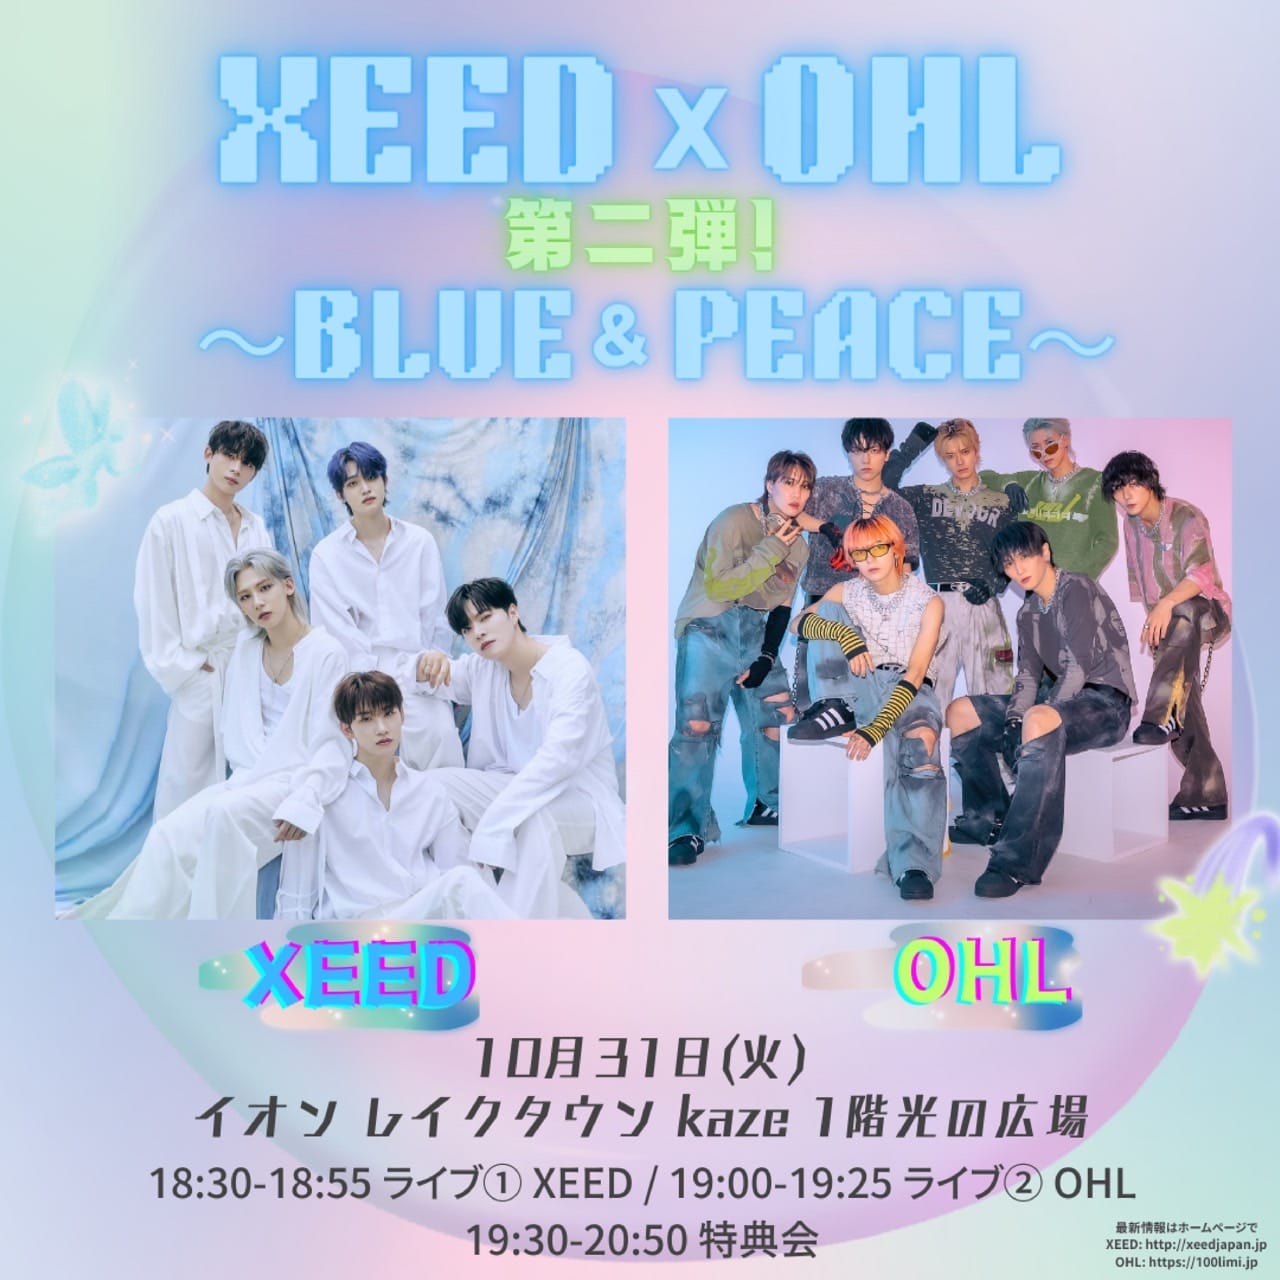 XEED スマートアルバム×3 CD×2 +サインCD